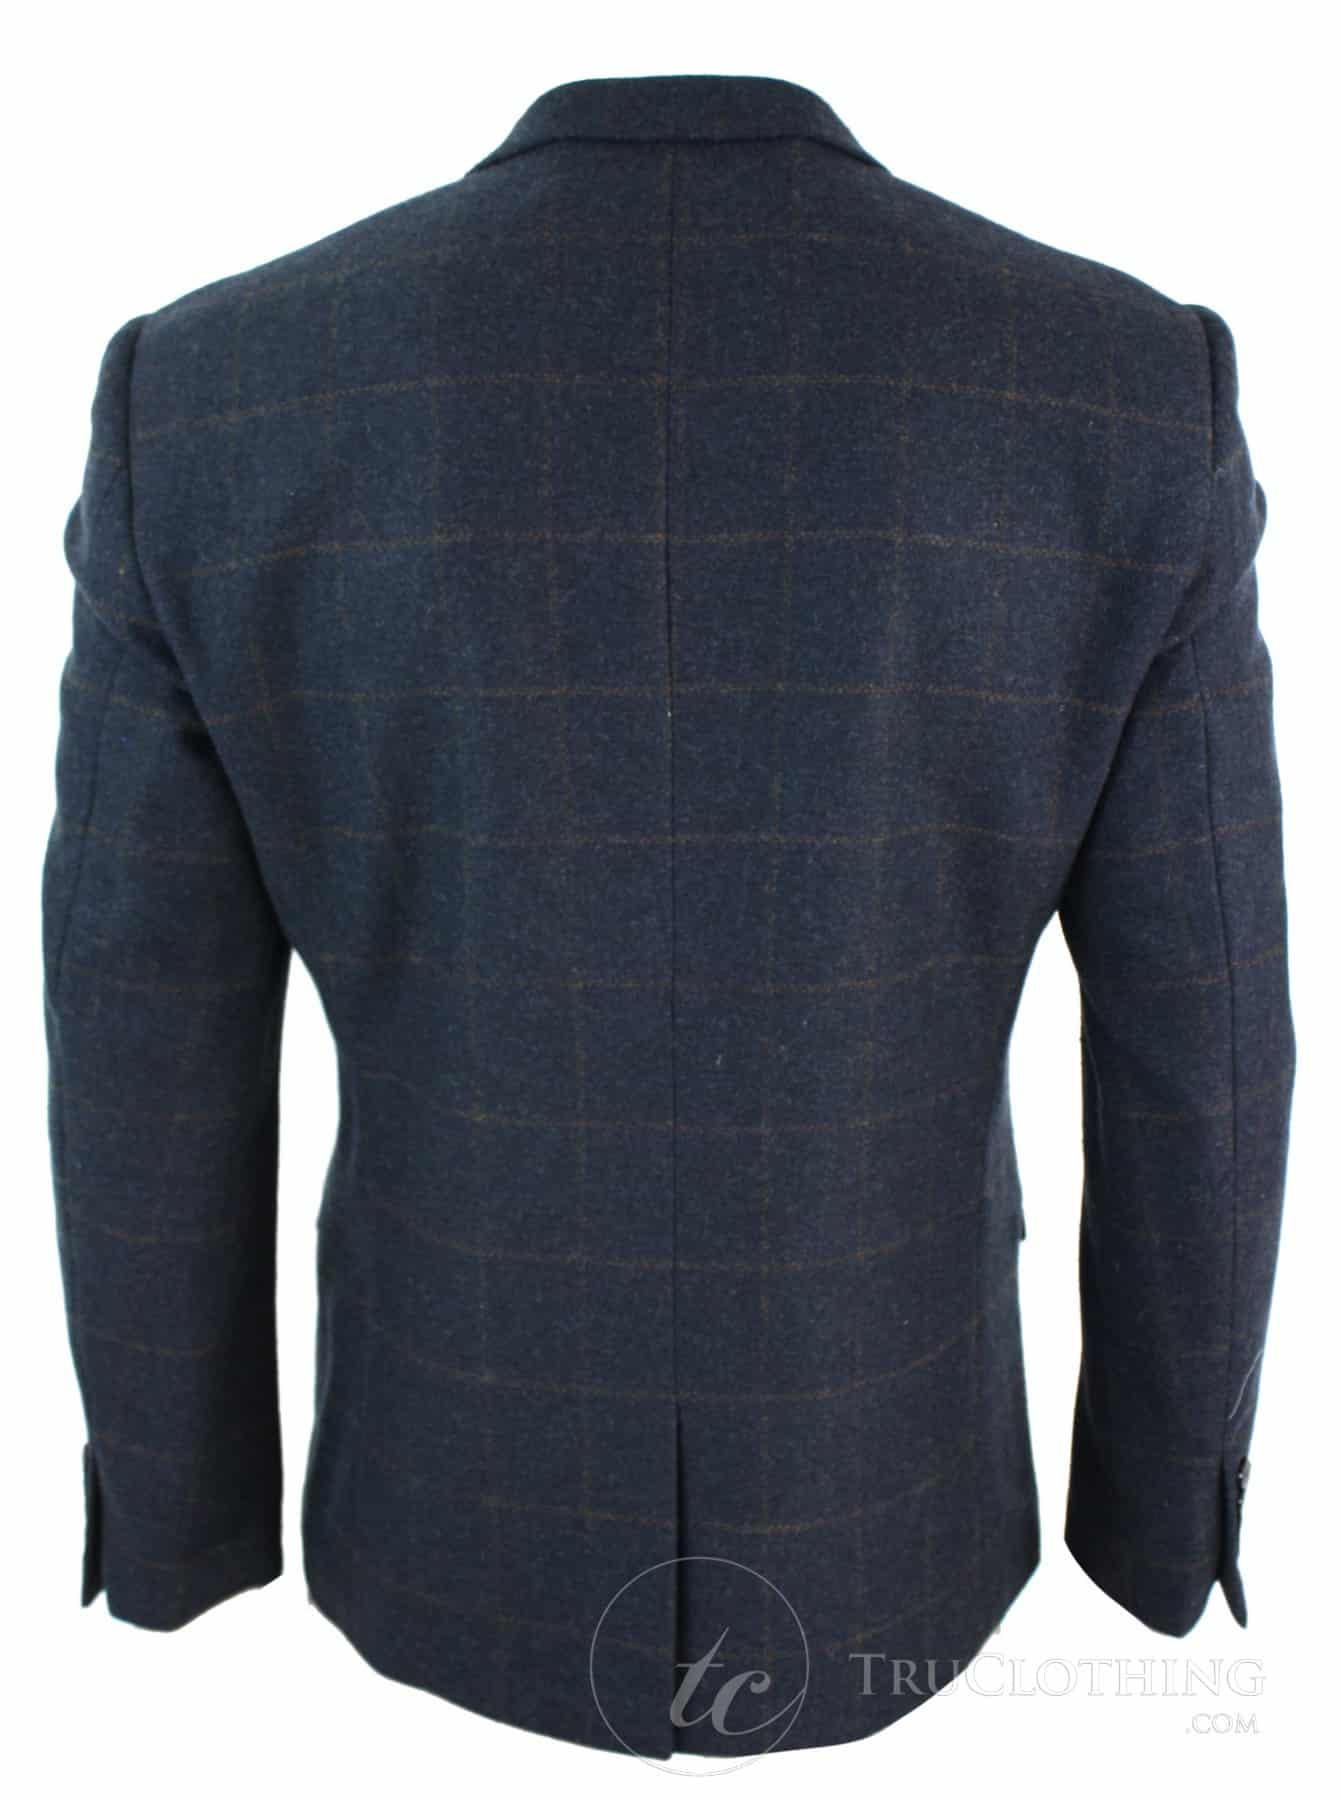 Mens Herringbone Tweed Blazer Smart Casual Tailored Fit Vintage Jacket Navy Blue